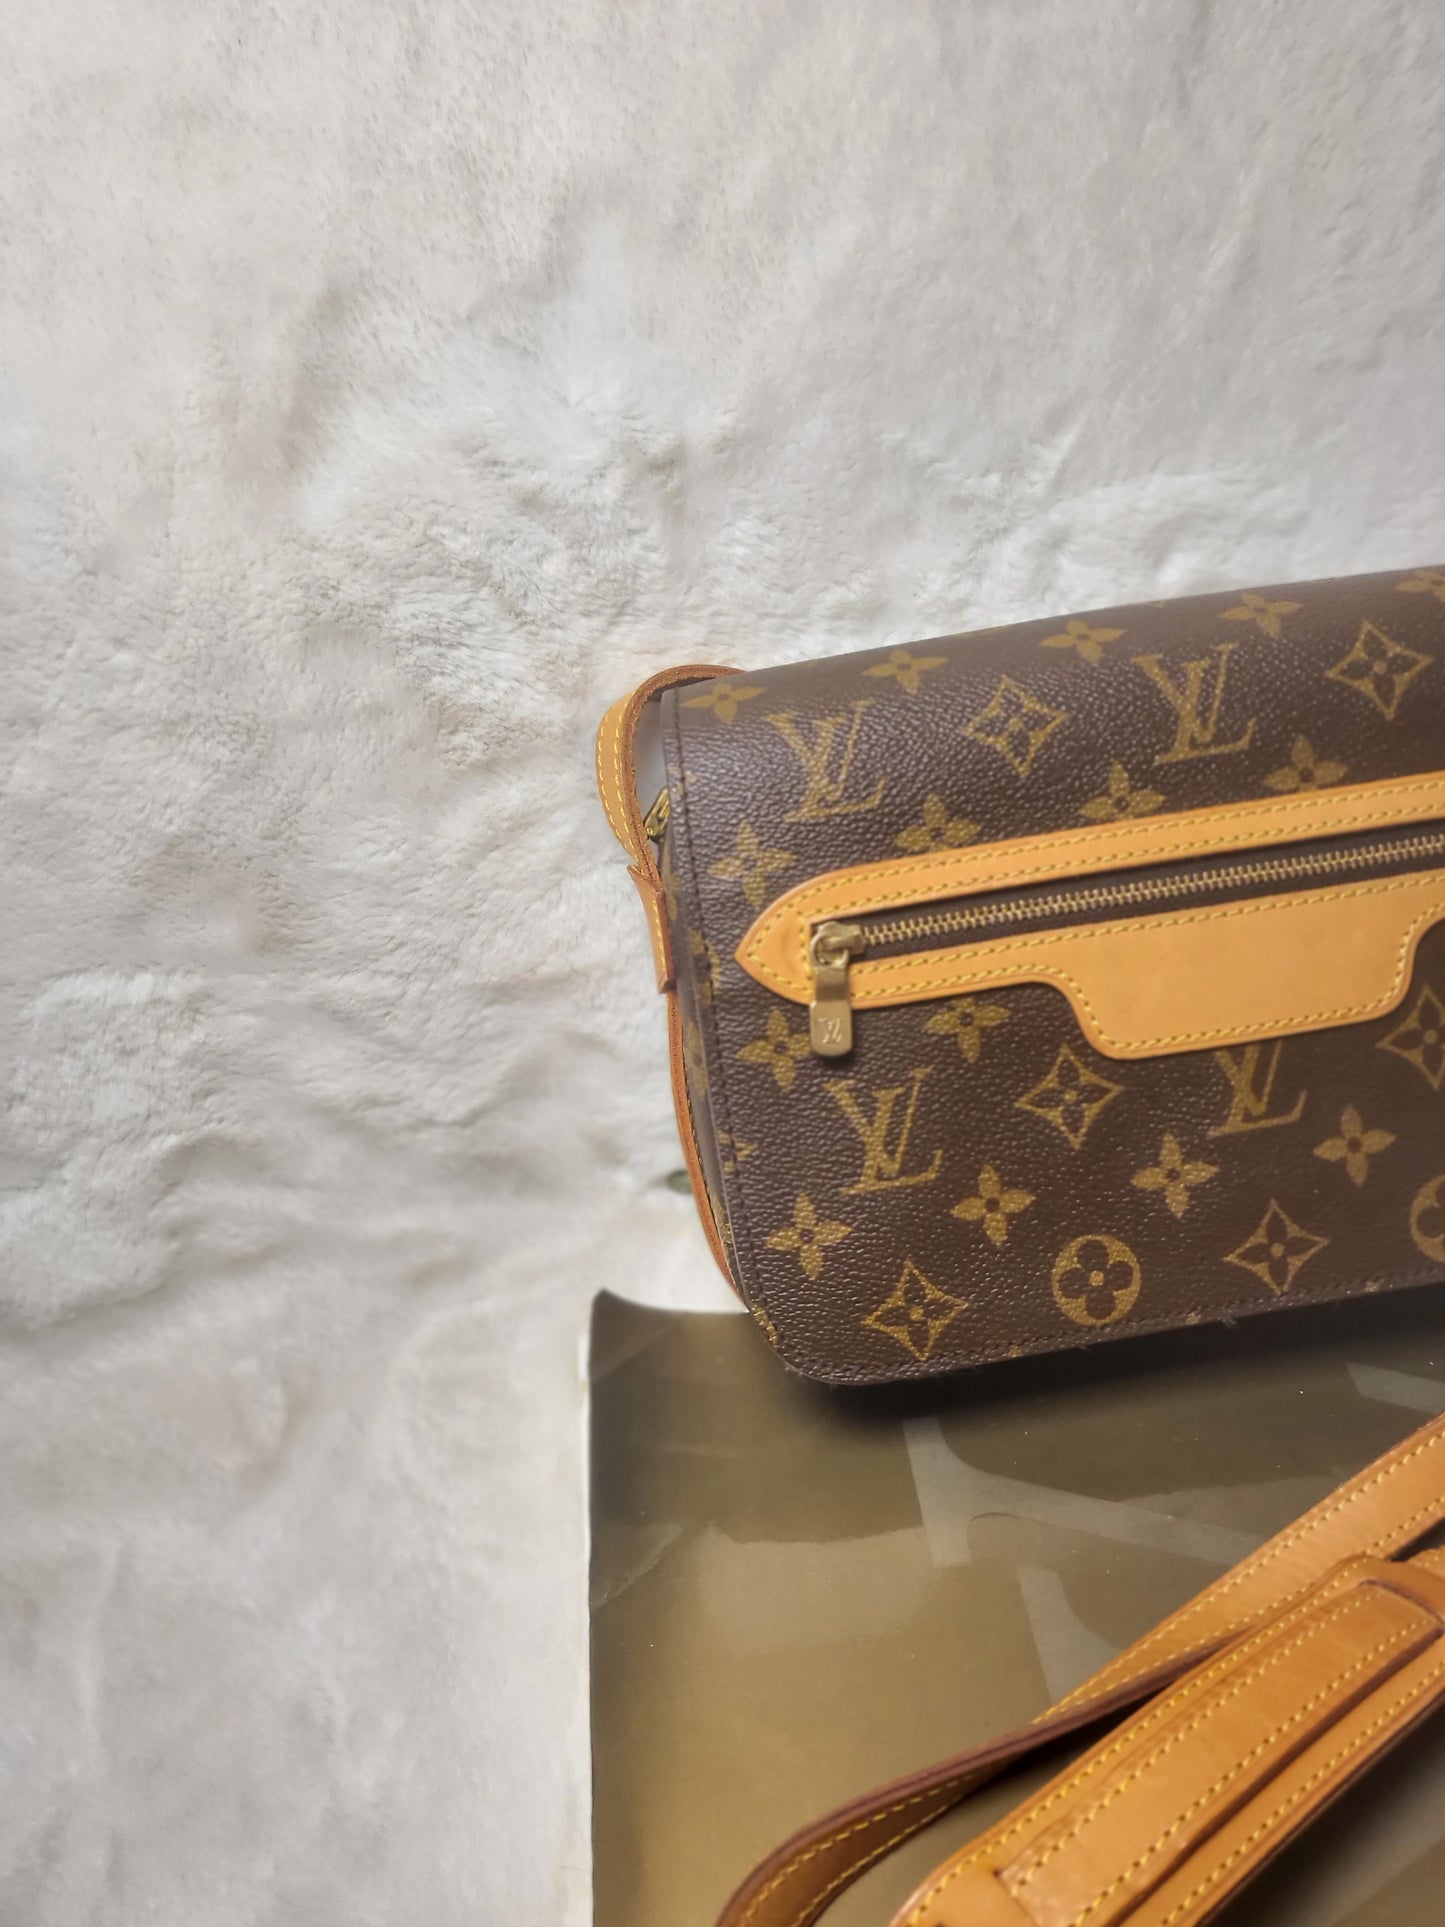 Authentic pre-owned Louis Vuitton Saint Germain crossbody shoulder bag